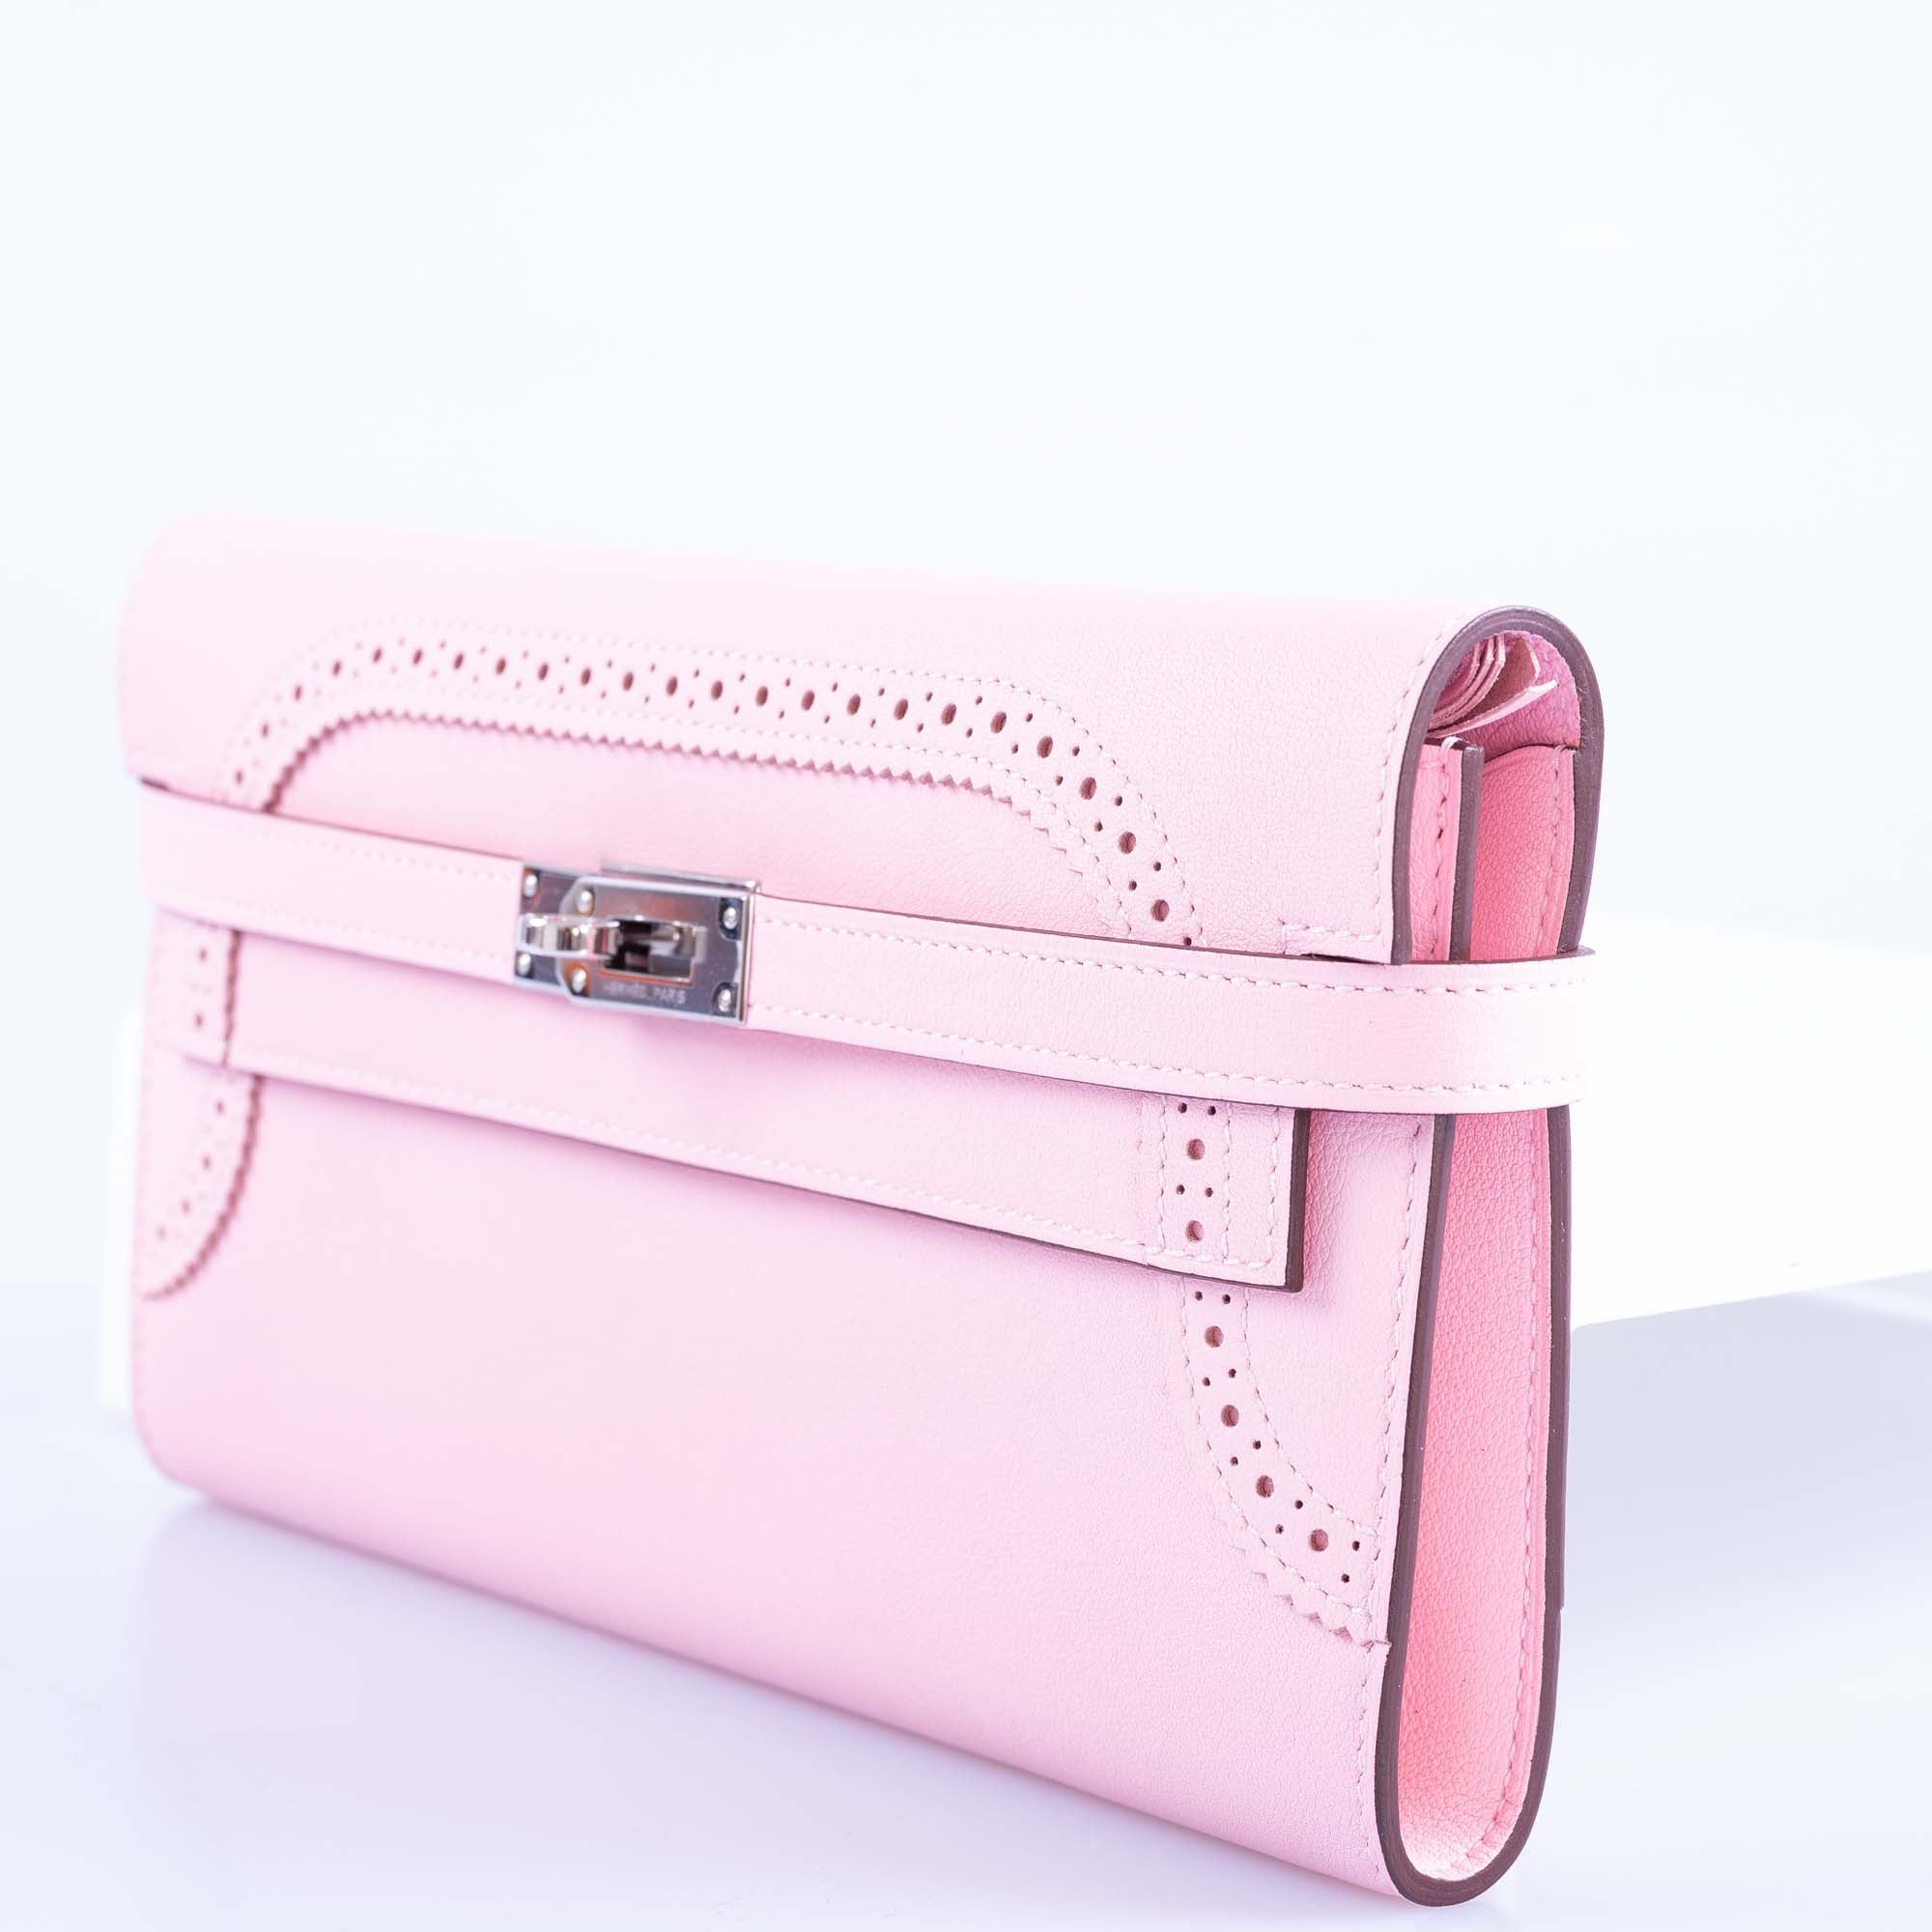 Hermès Kelly Rose Sakura Swift Ghillies Wallet Palladium Hardware